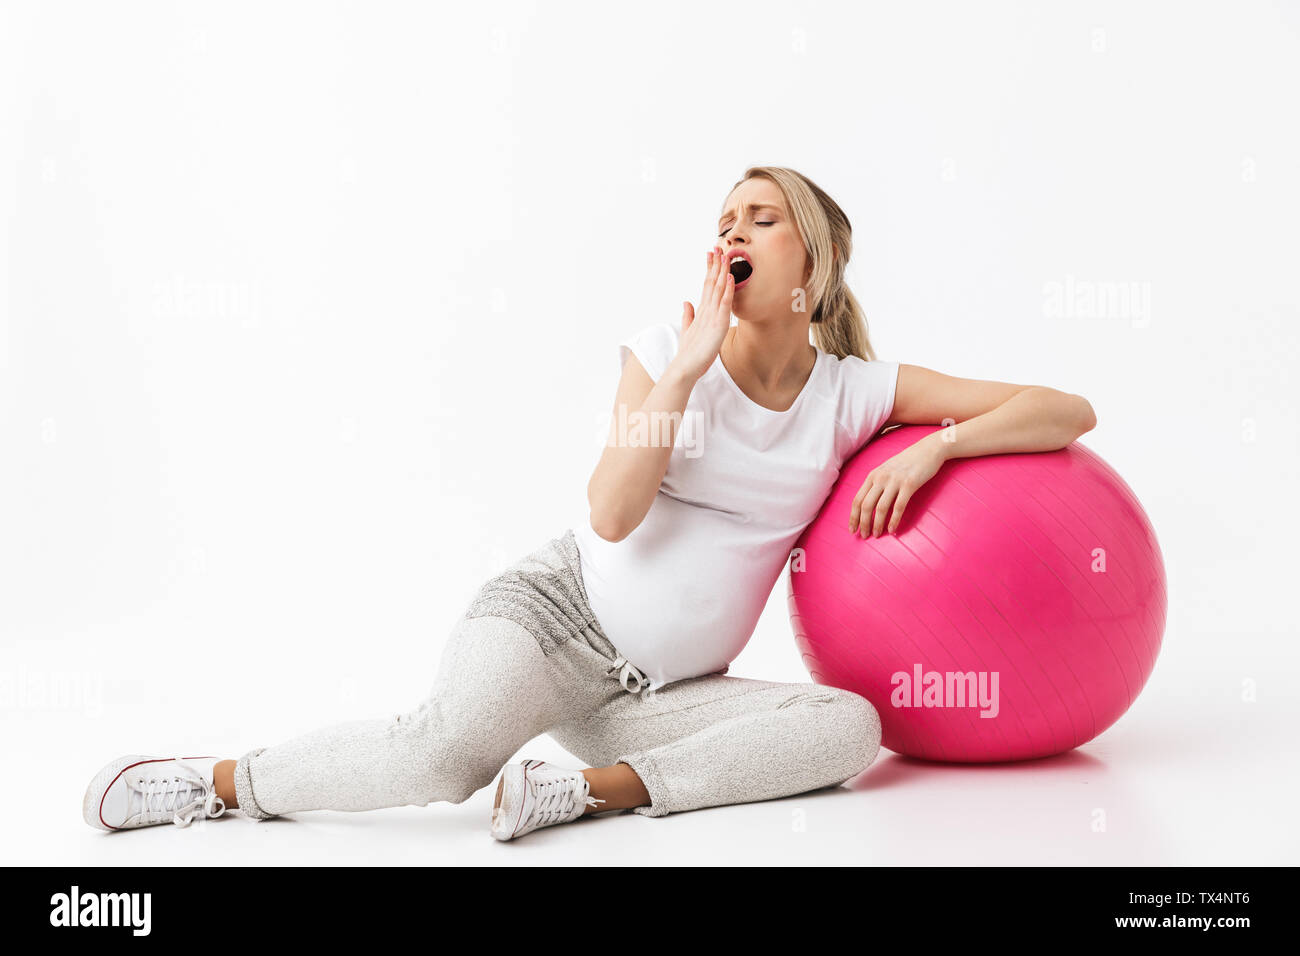 Immagine di una bella sbadigli giovani incinte fitness yoga donna posa isolate su muro bianco sullo sfondo si trova sulla sfera. Foto Stock